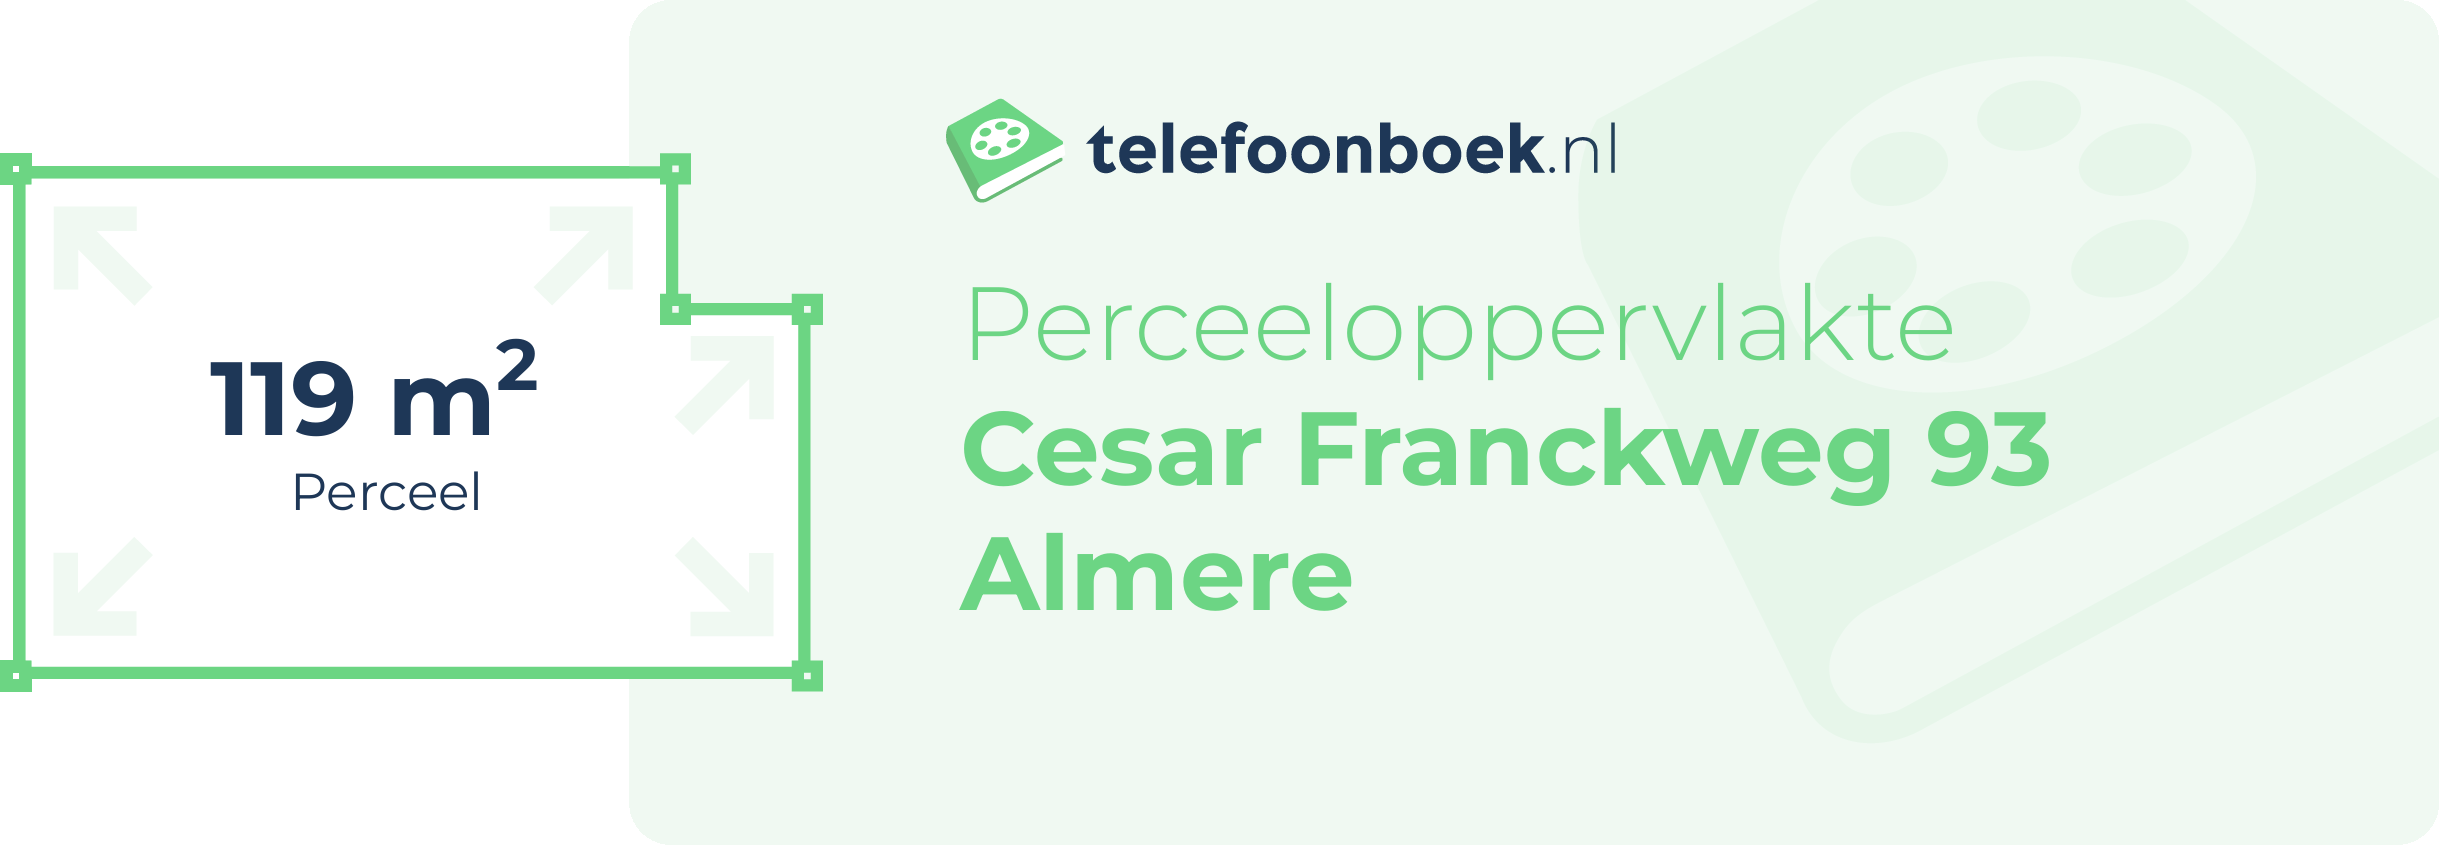 Perceeloppervlakte Cesar Franckweg 93 Almere